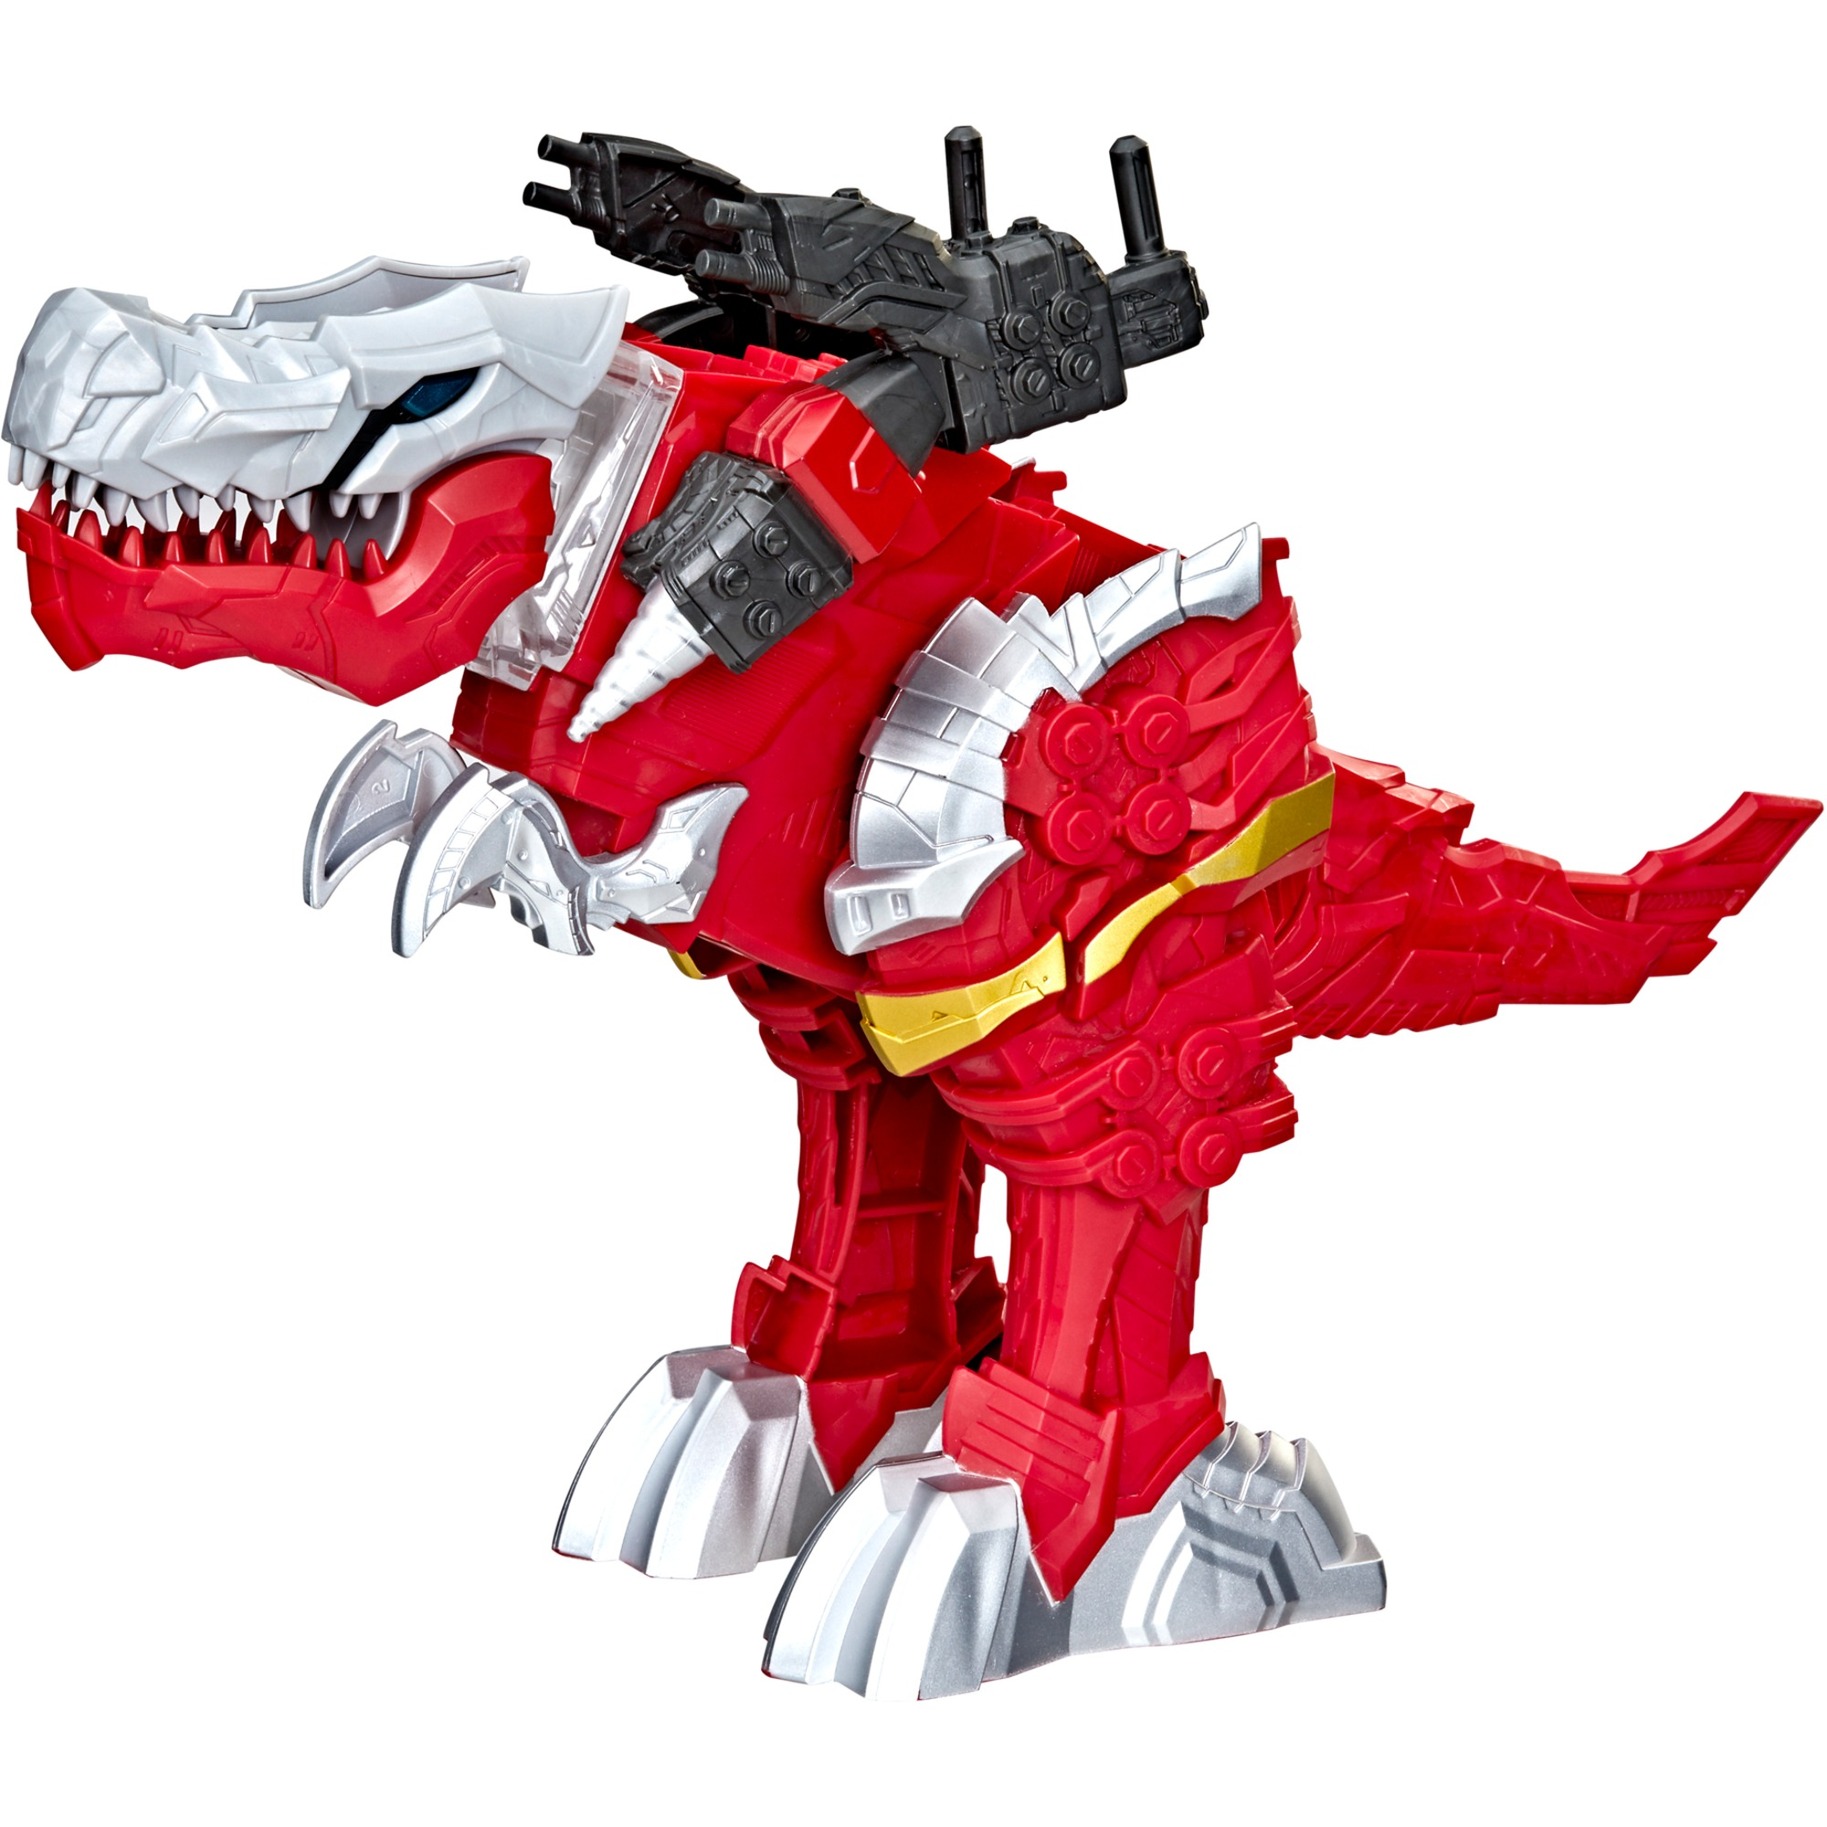 Image of Alternate - Power Rangers Battle Attackers Dino Fury T-Rex Champion Zord, Spielfigur online einkaufen bei Alternate